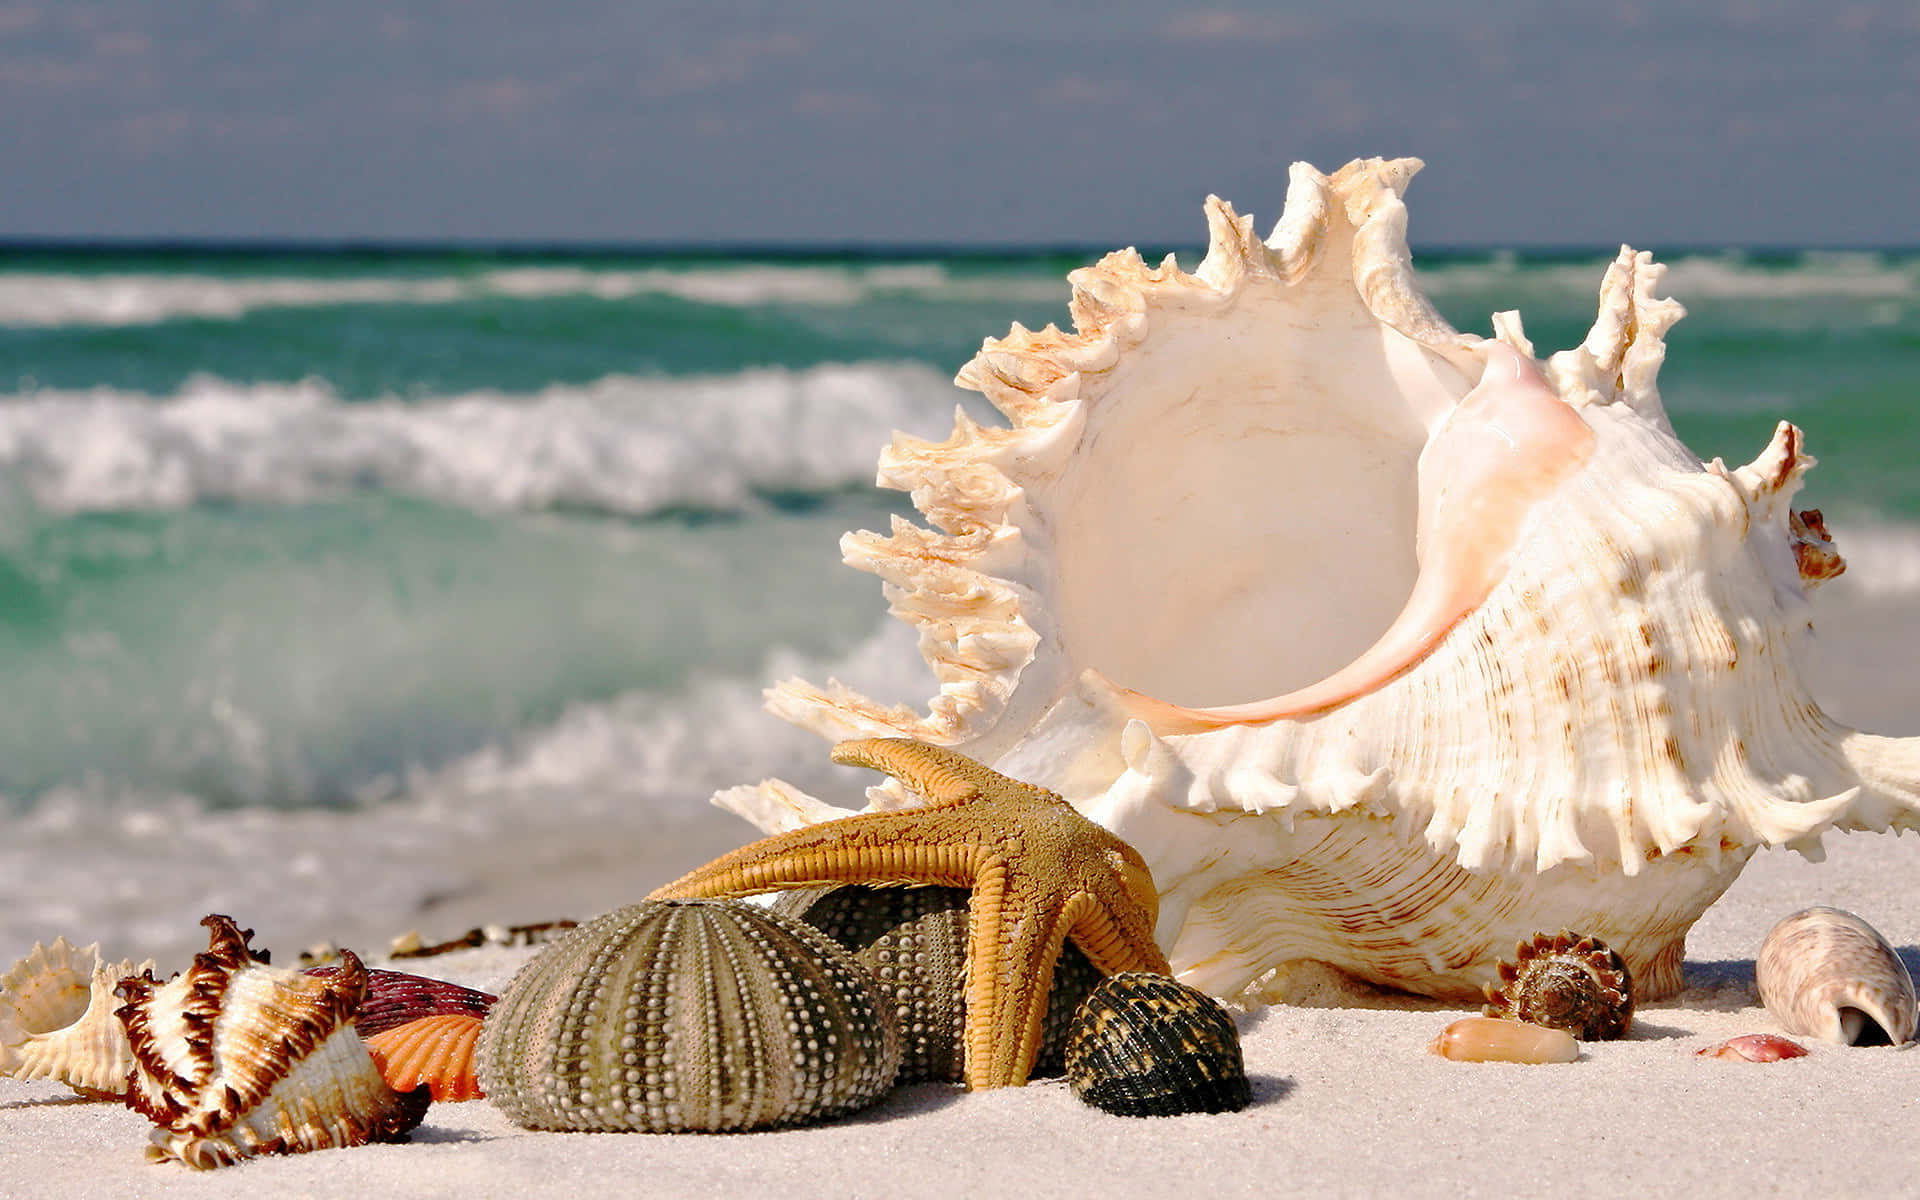 Stunning Seashell on Beach Sands